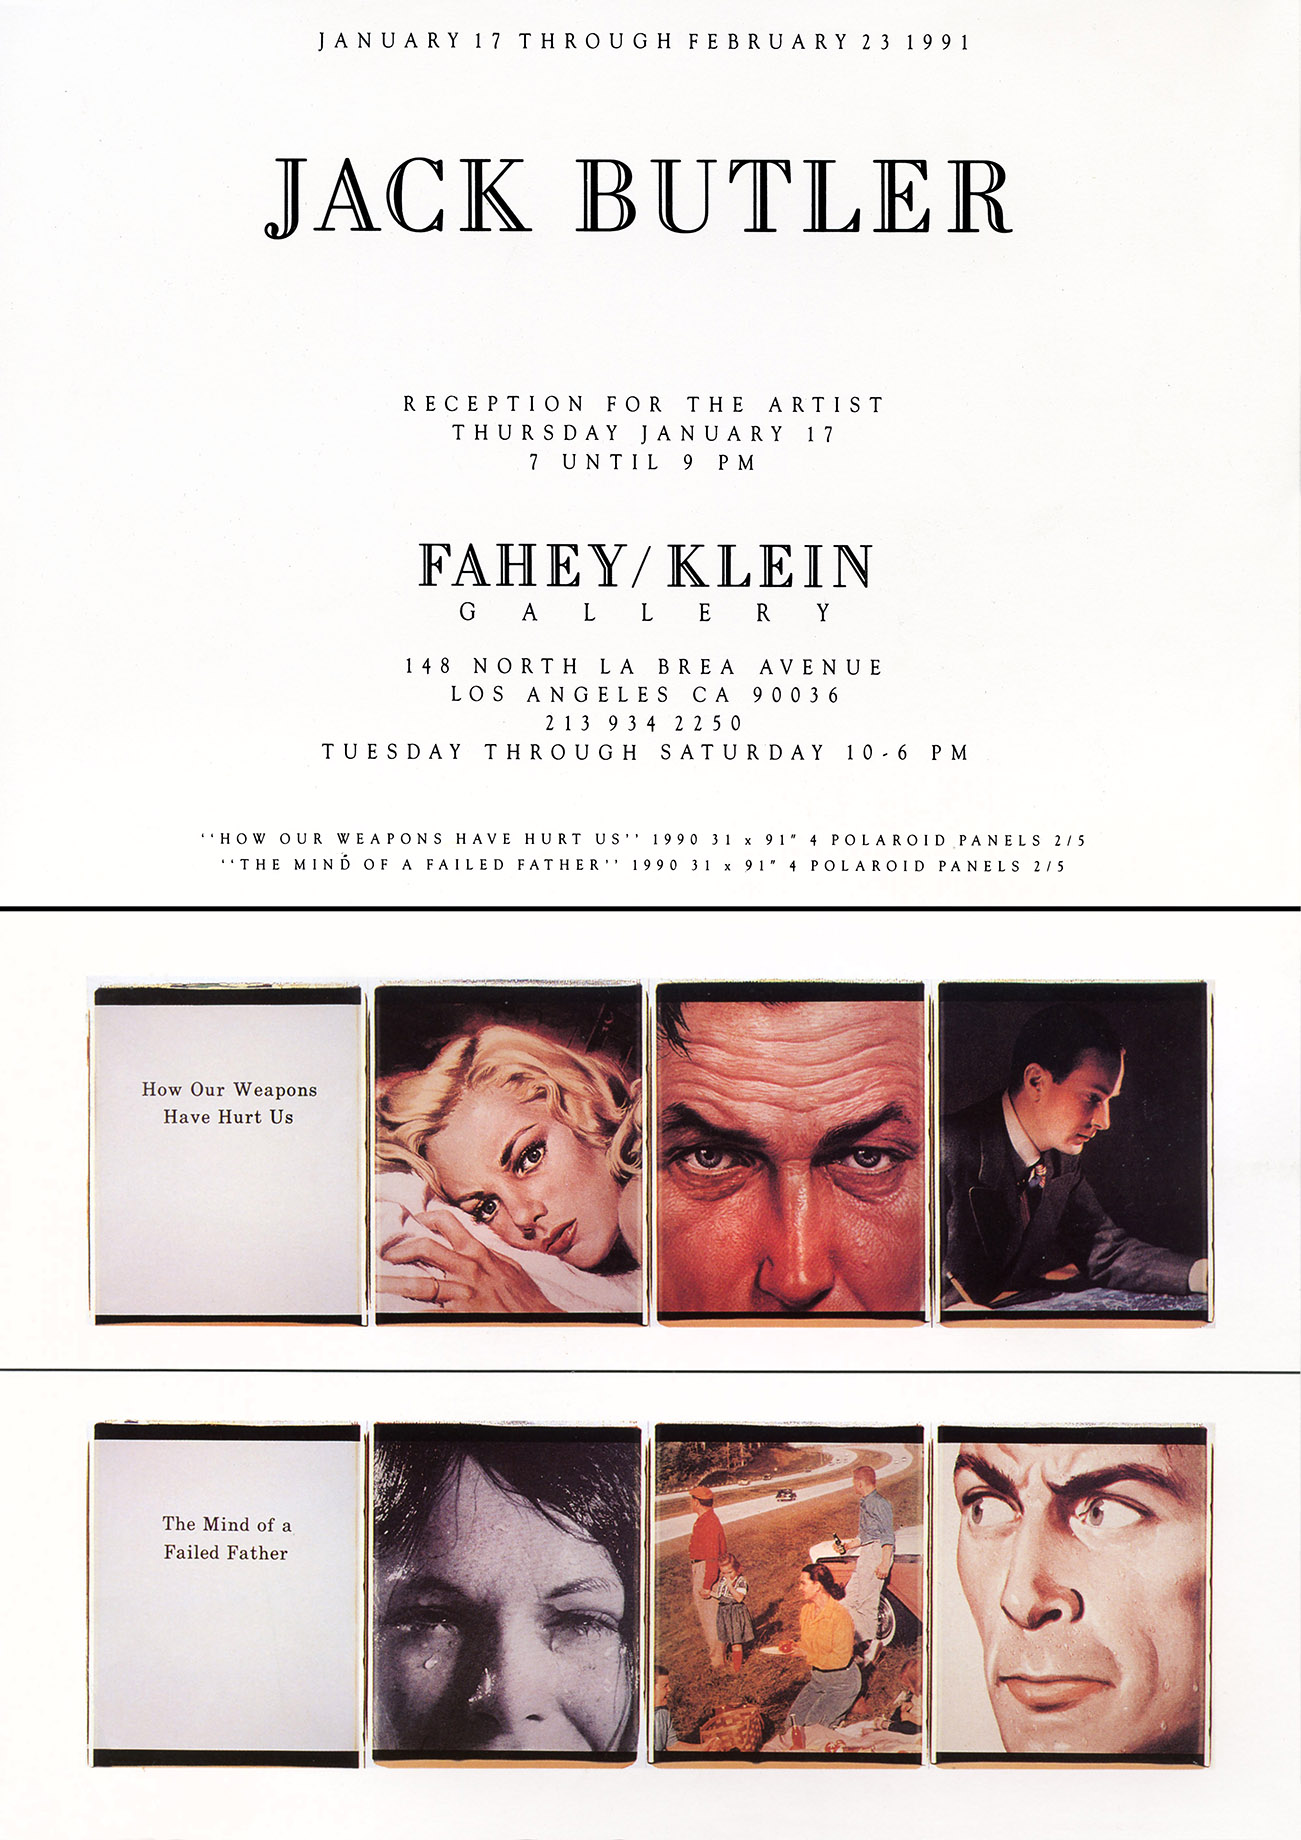 Announcement, Fahey Klein Gallery 1991